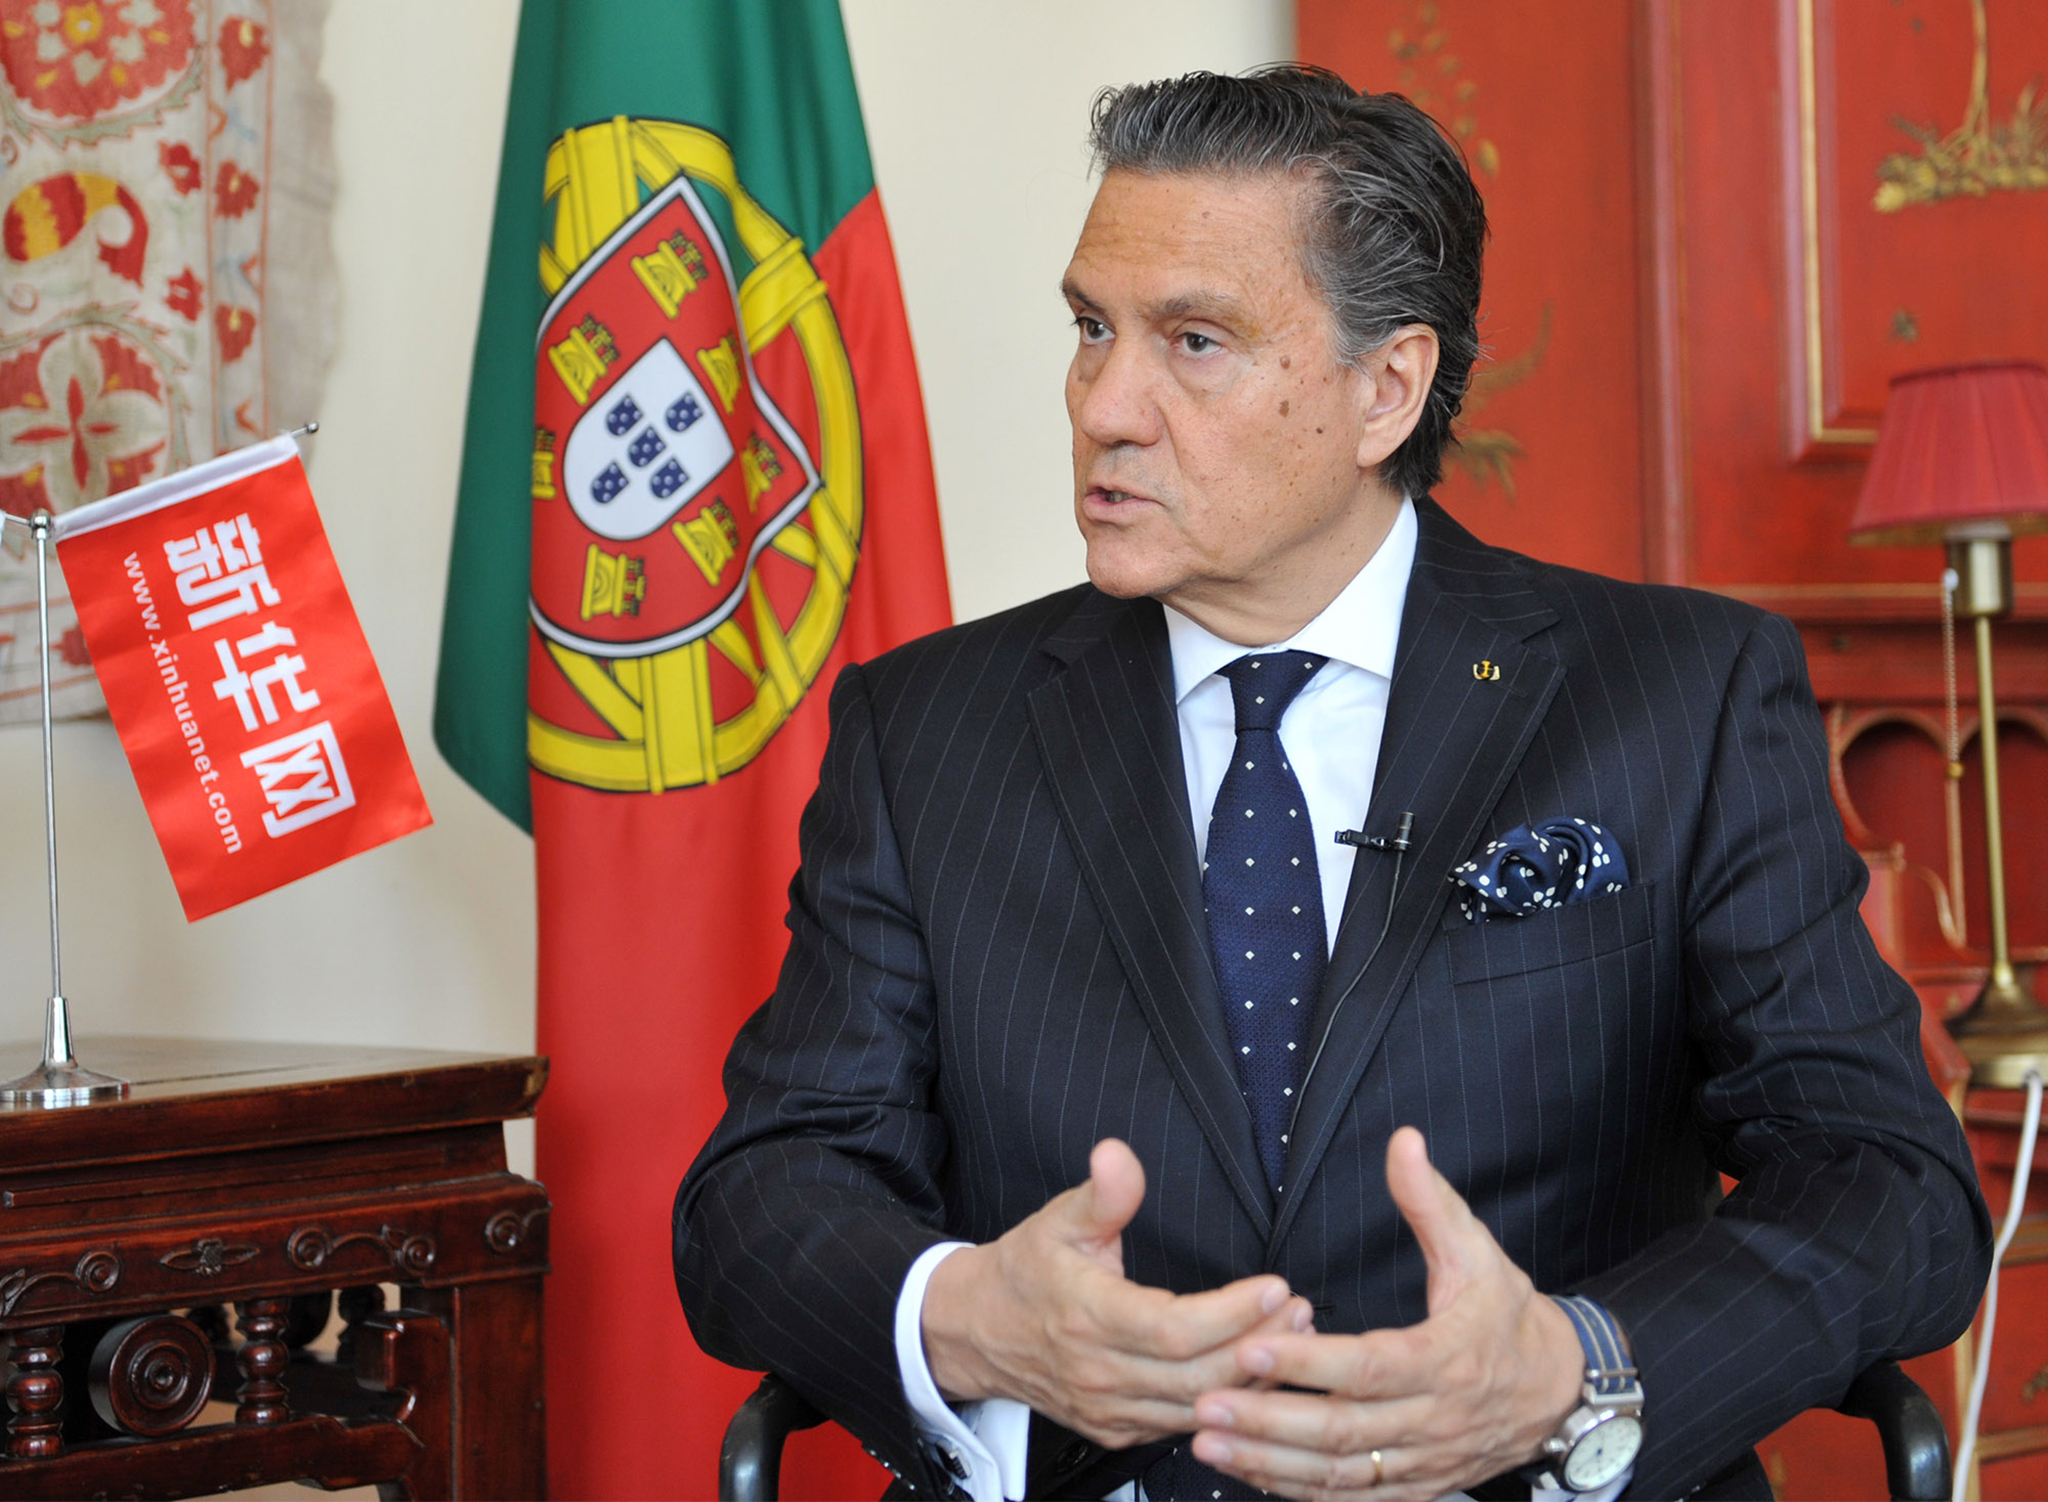 Pequim Embaixador português cessante prevê China mais interventiva no exterior